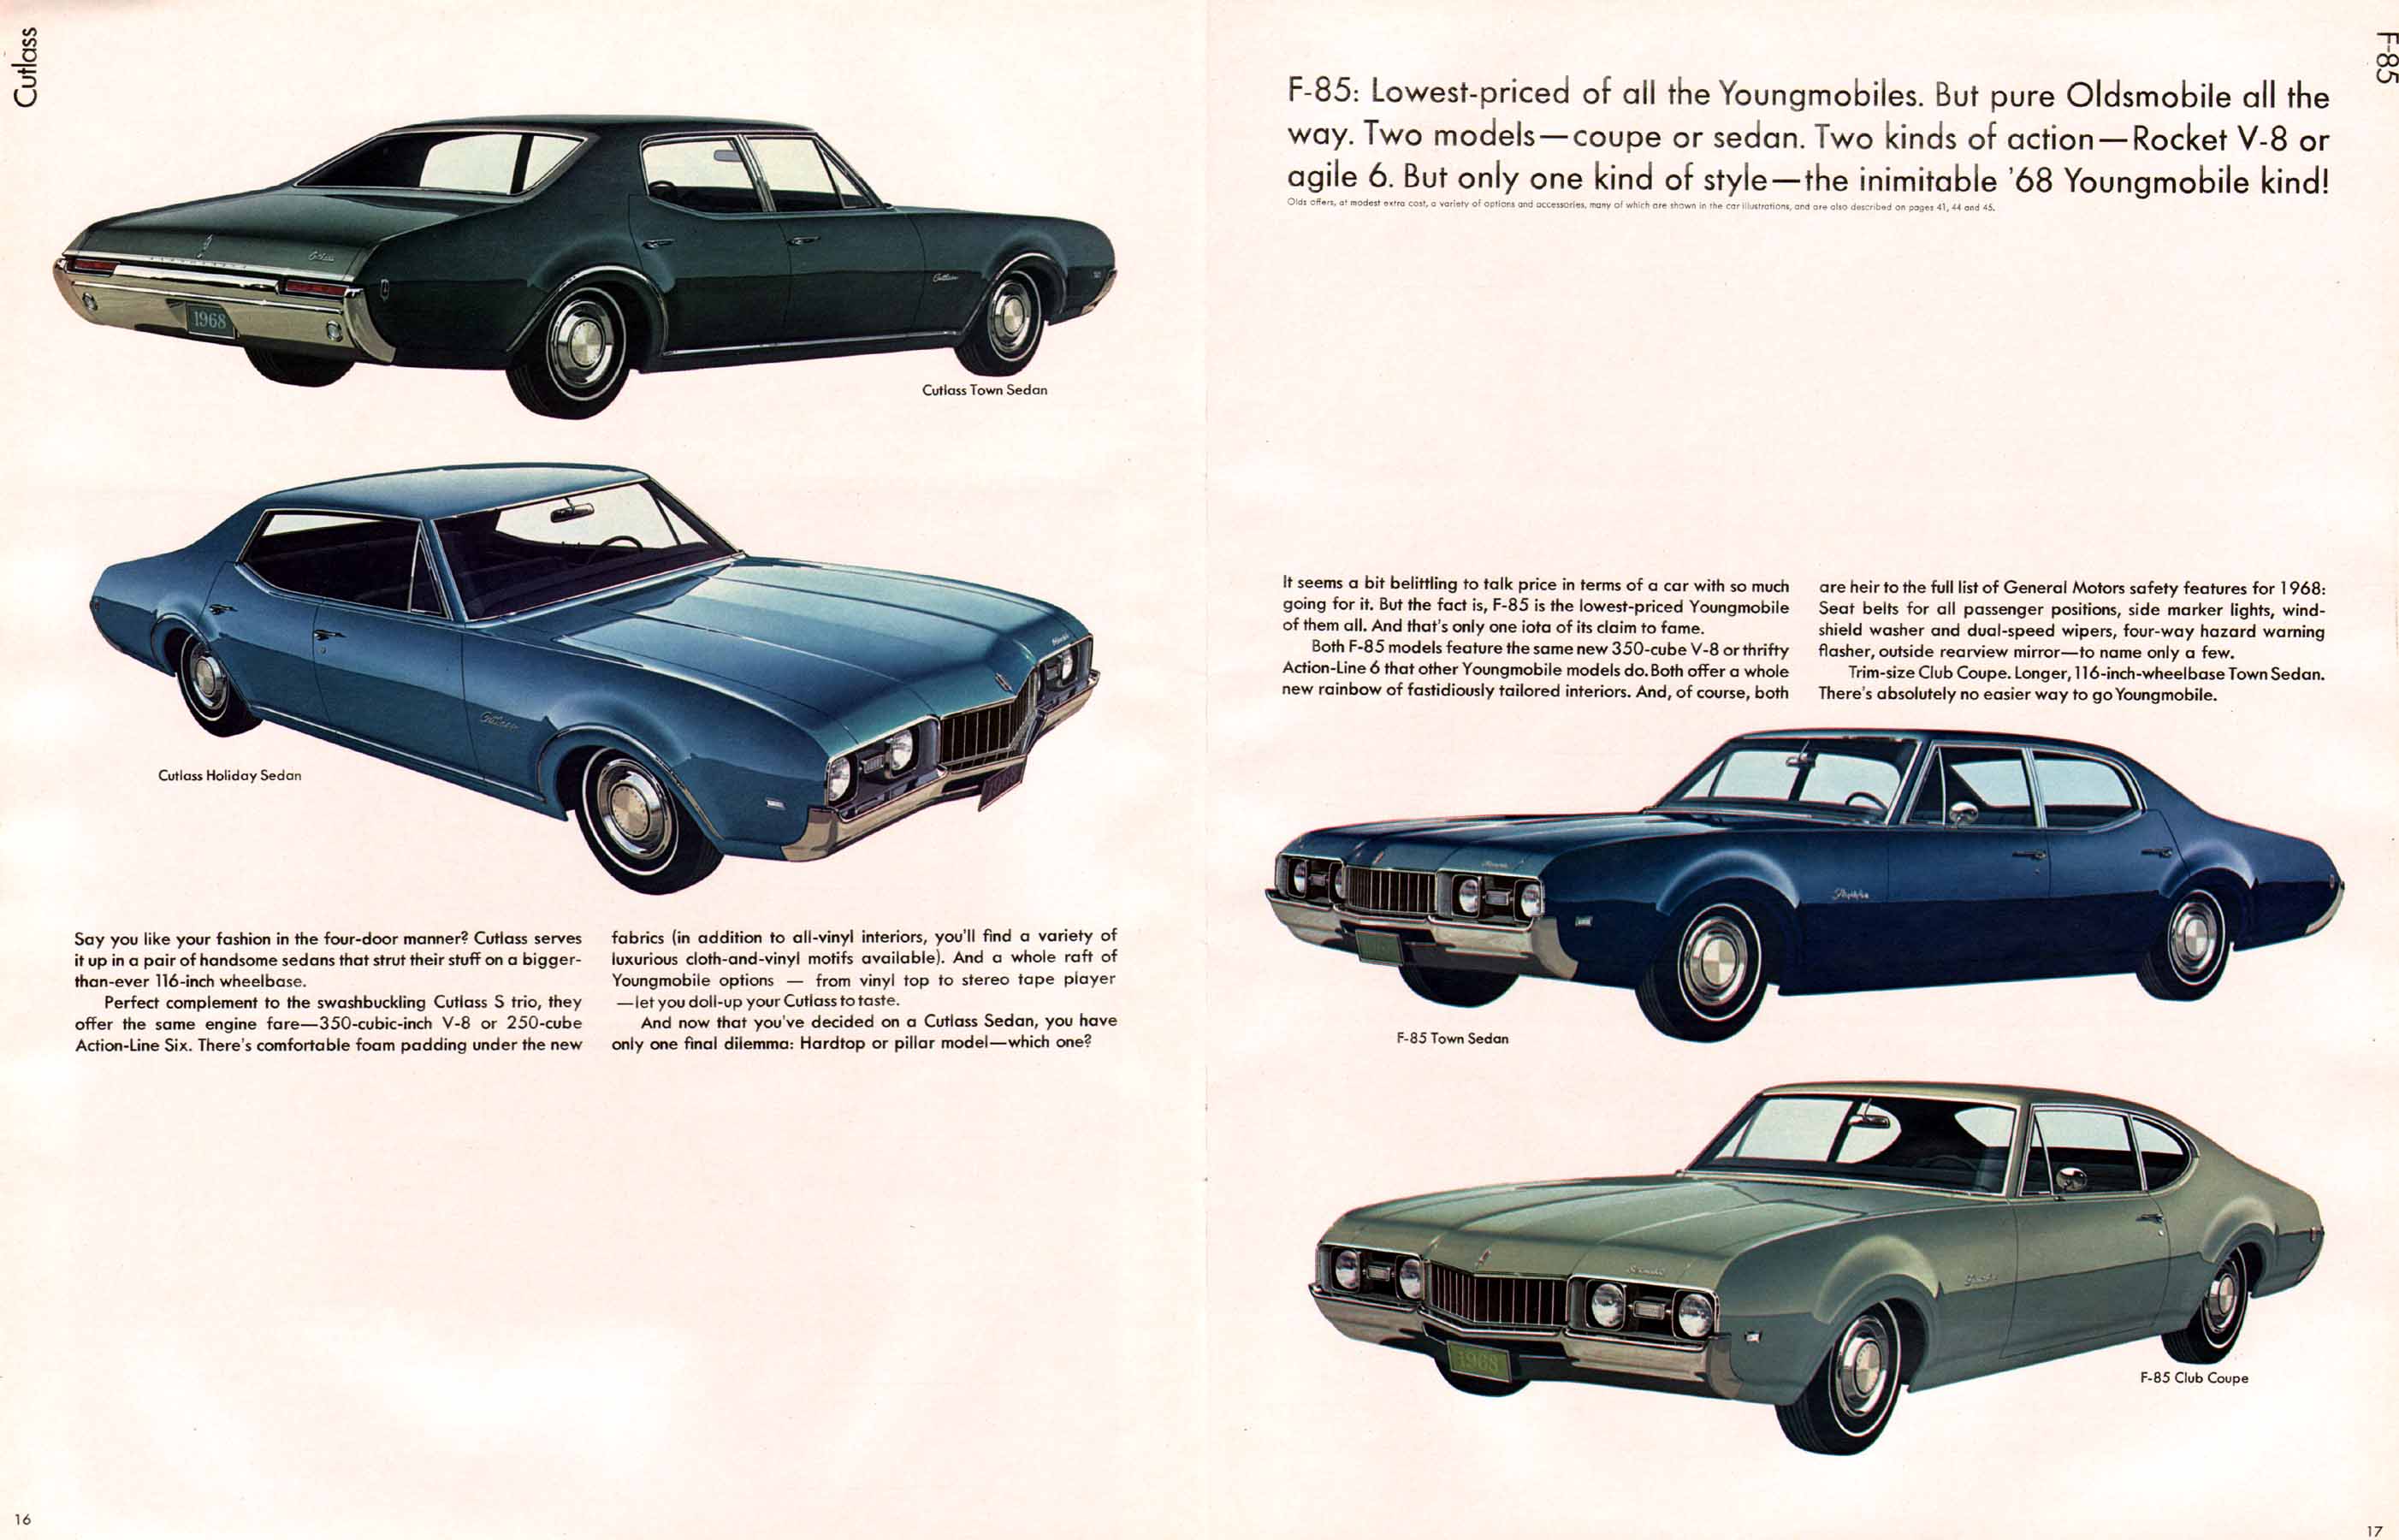 1968 Oldsmobile Prestige-16-17